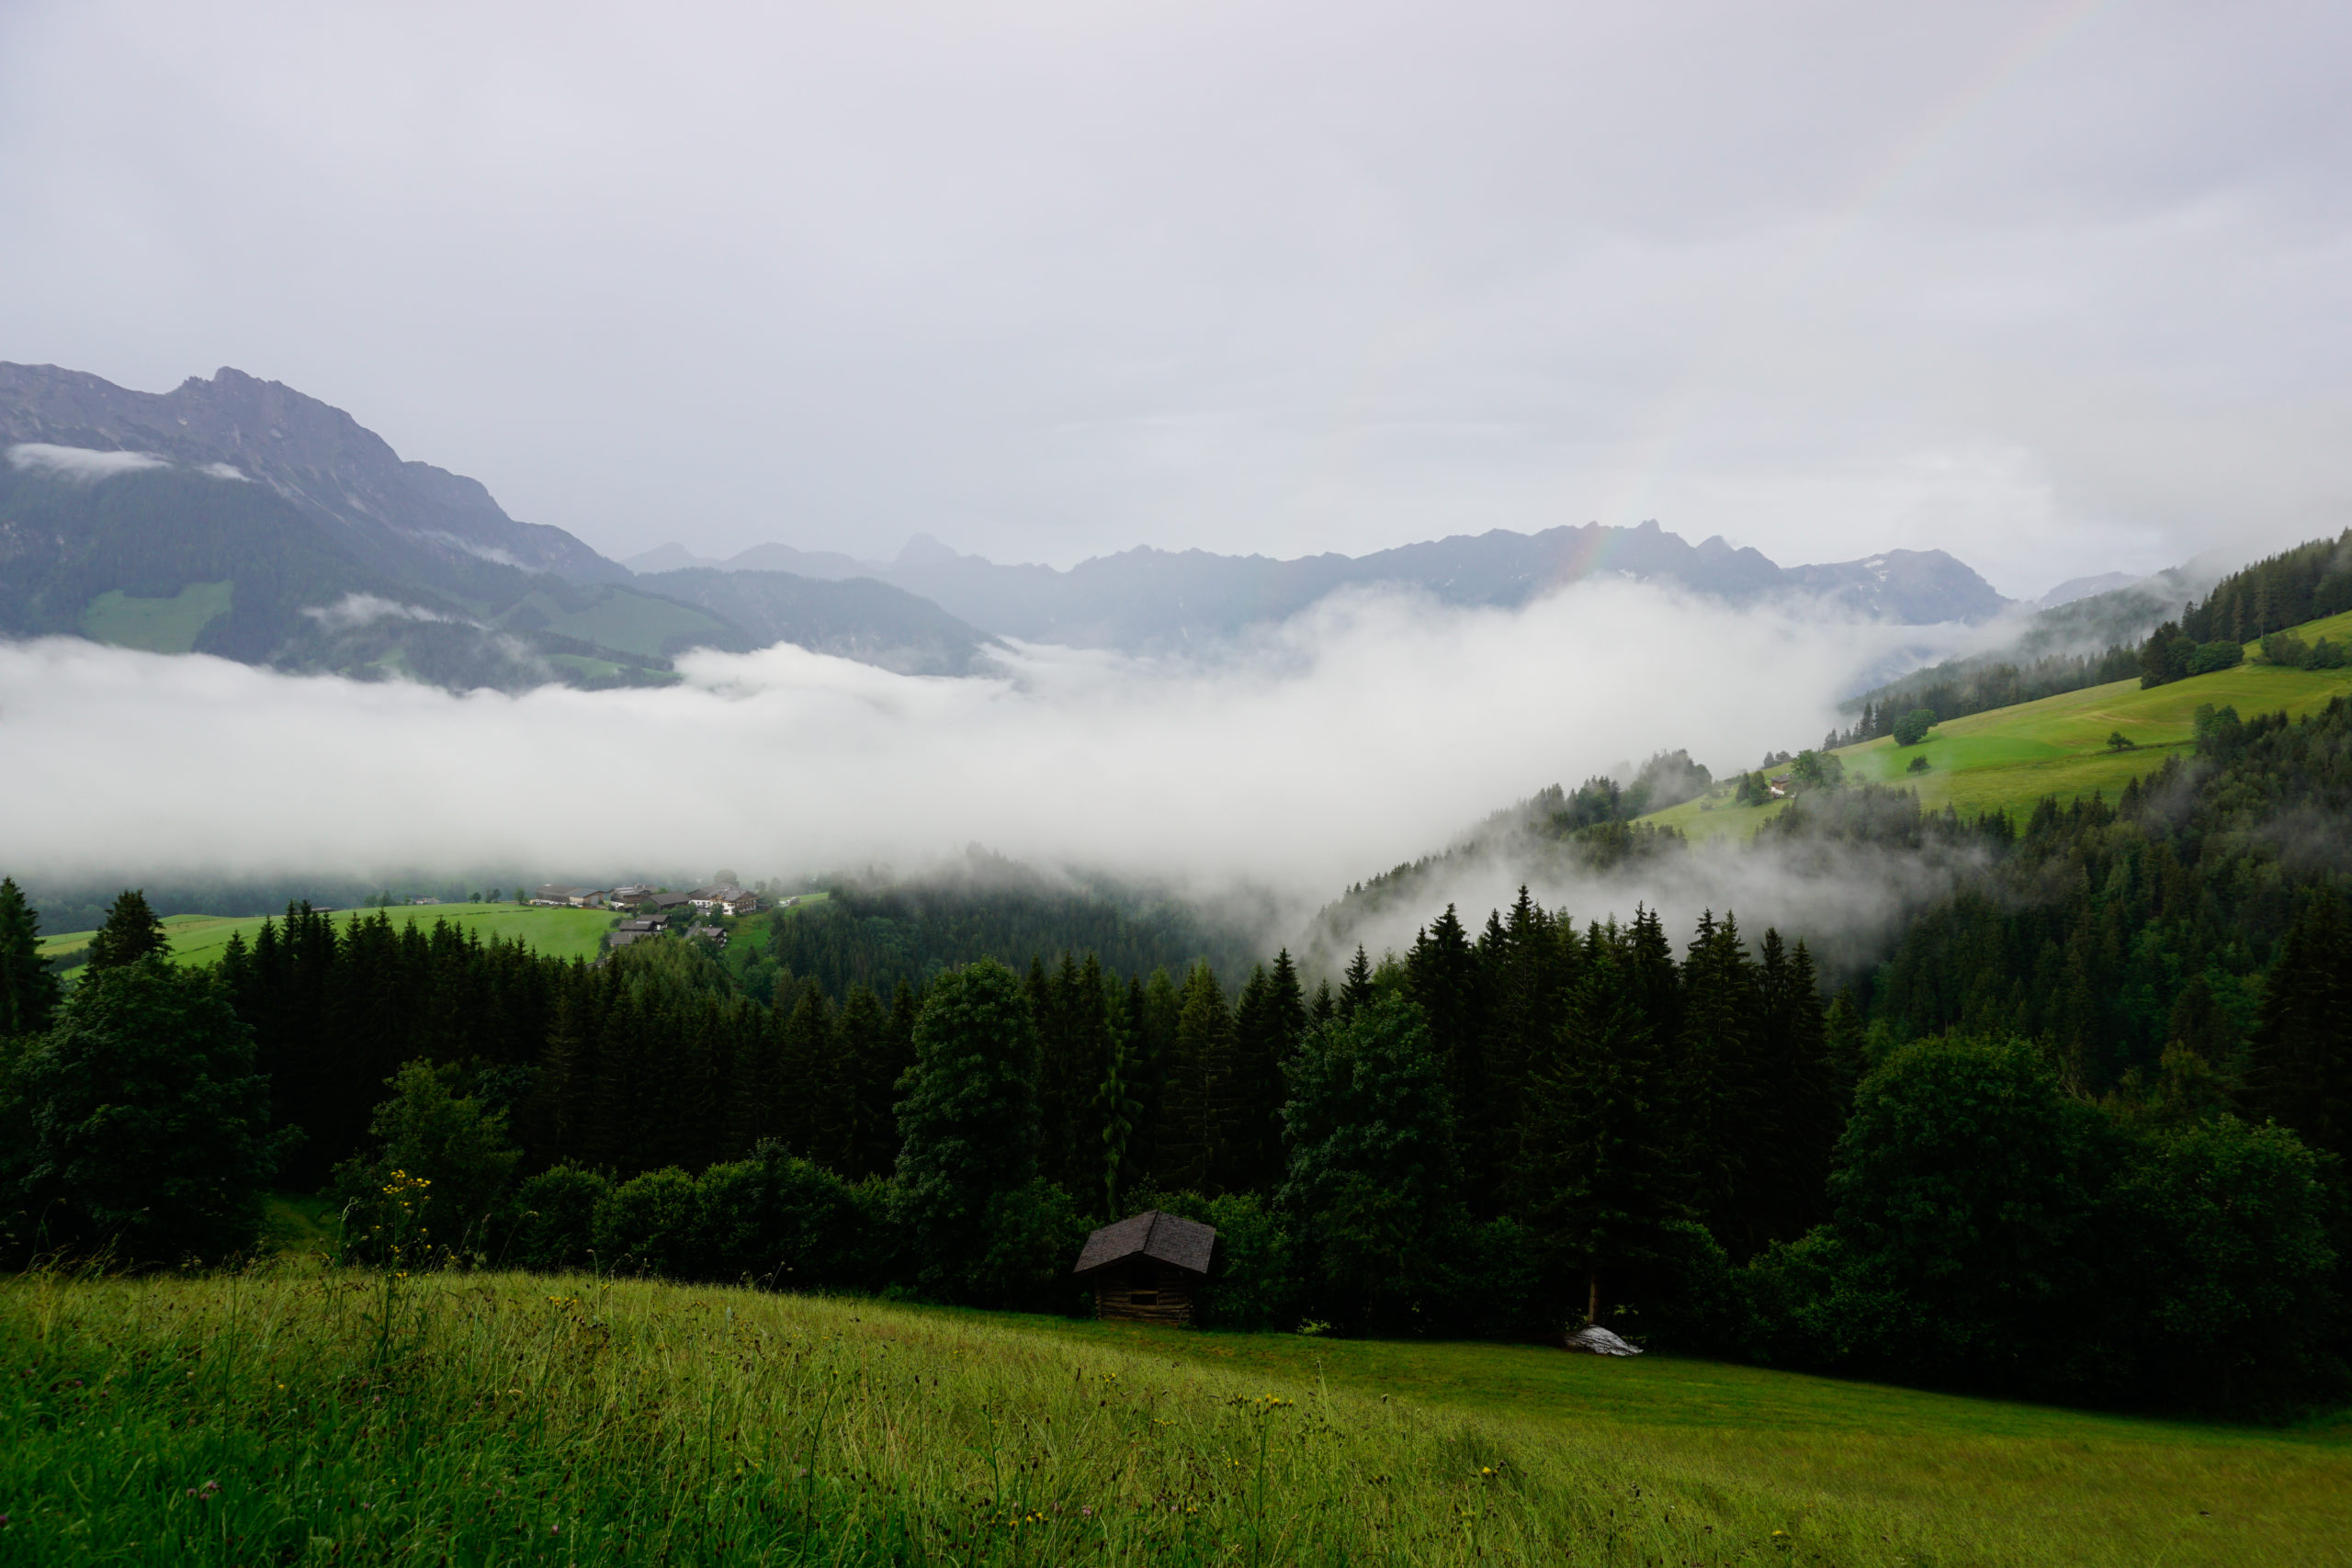 mycabin keyimages 04 scaled - MyCabin ermöglicht naturnahes Übernachten auf Privatgrundstücken im Alpenraum